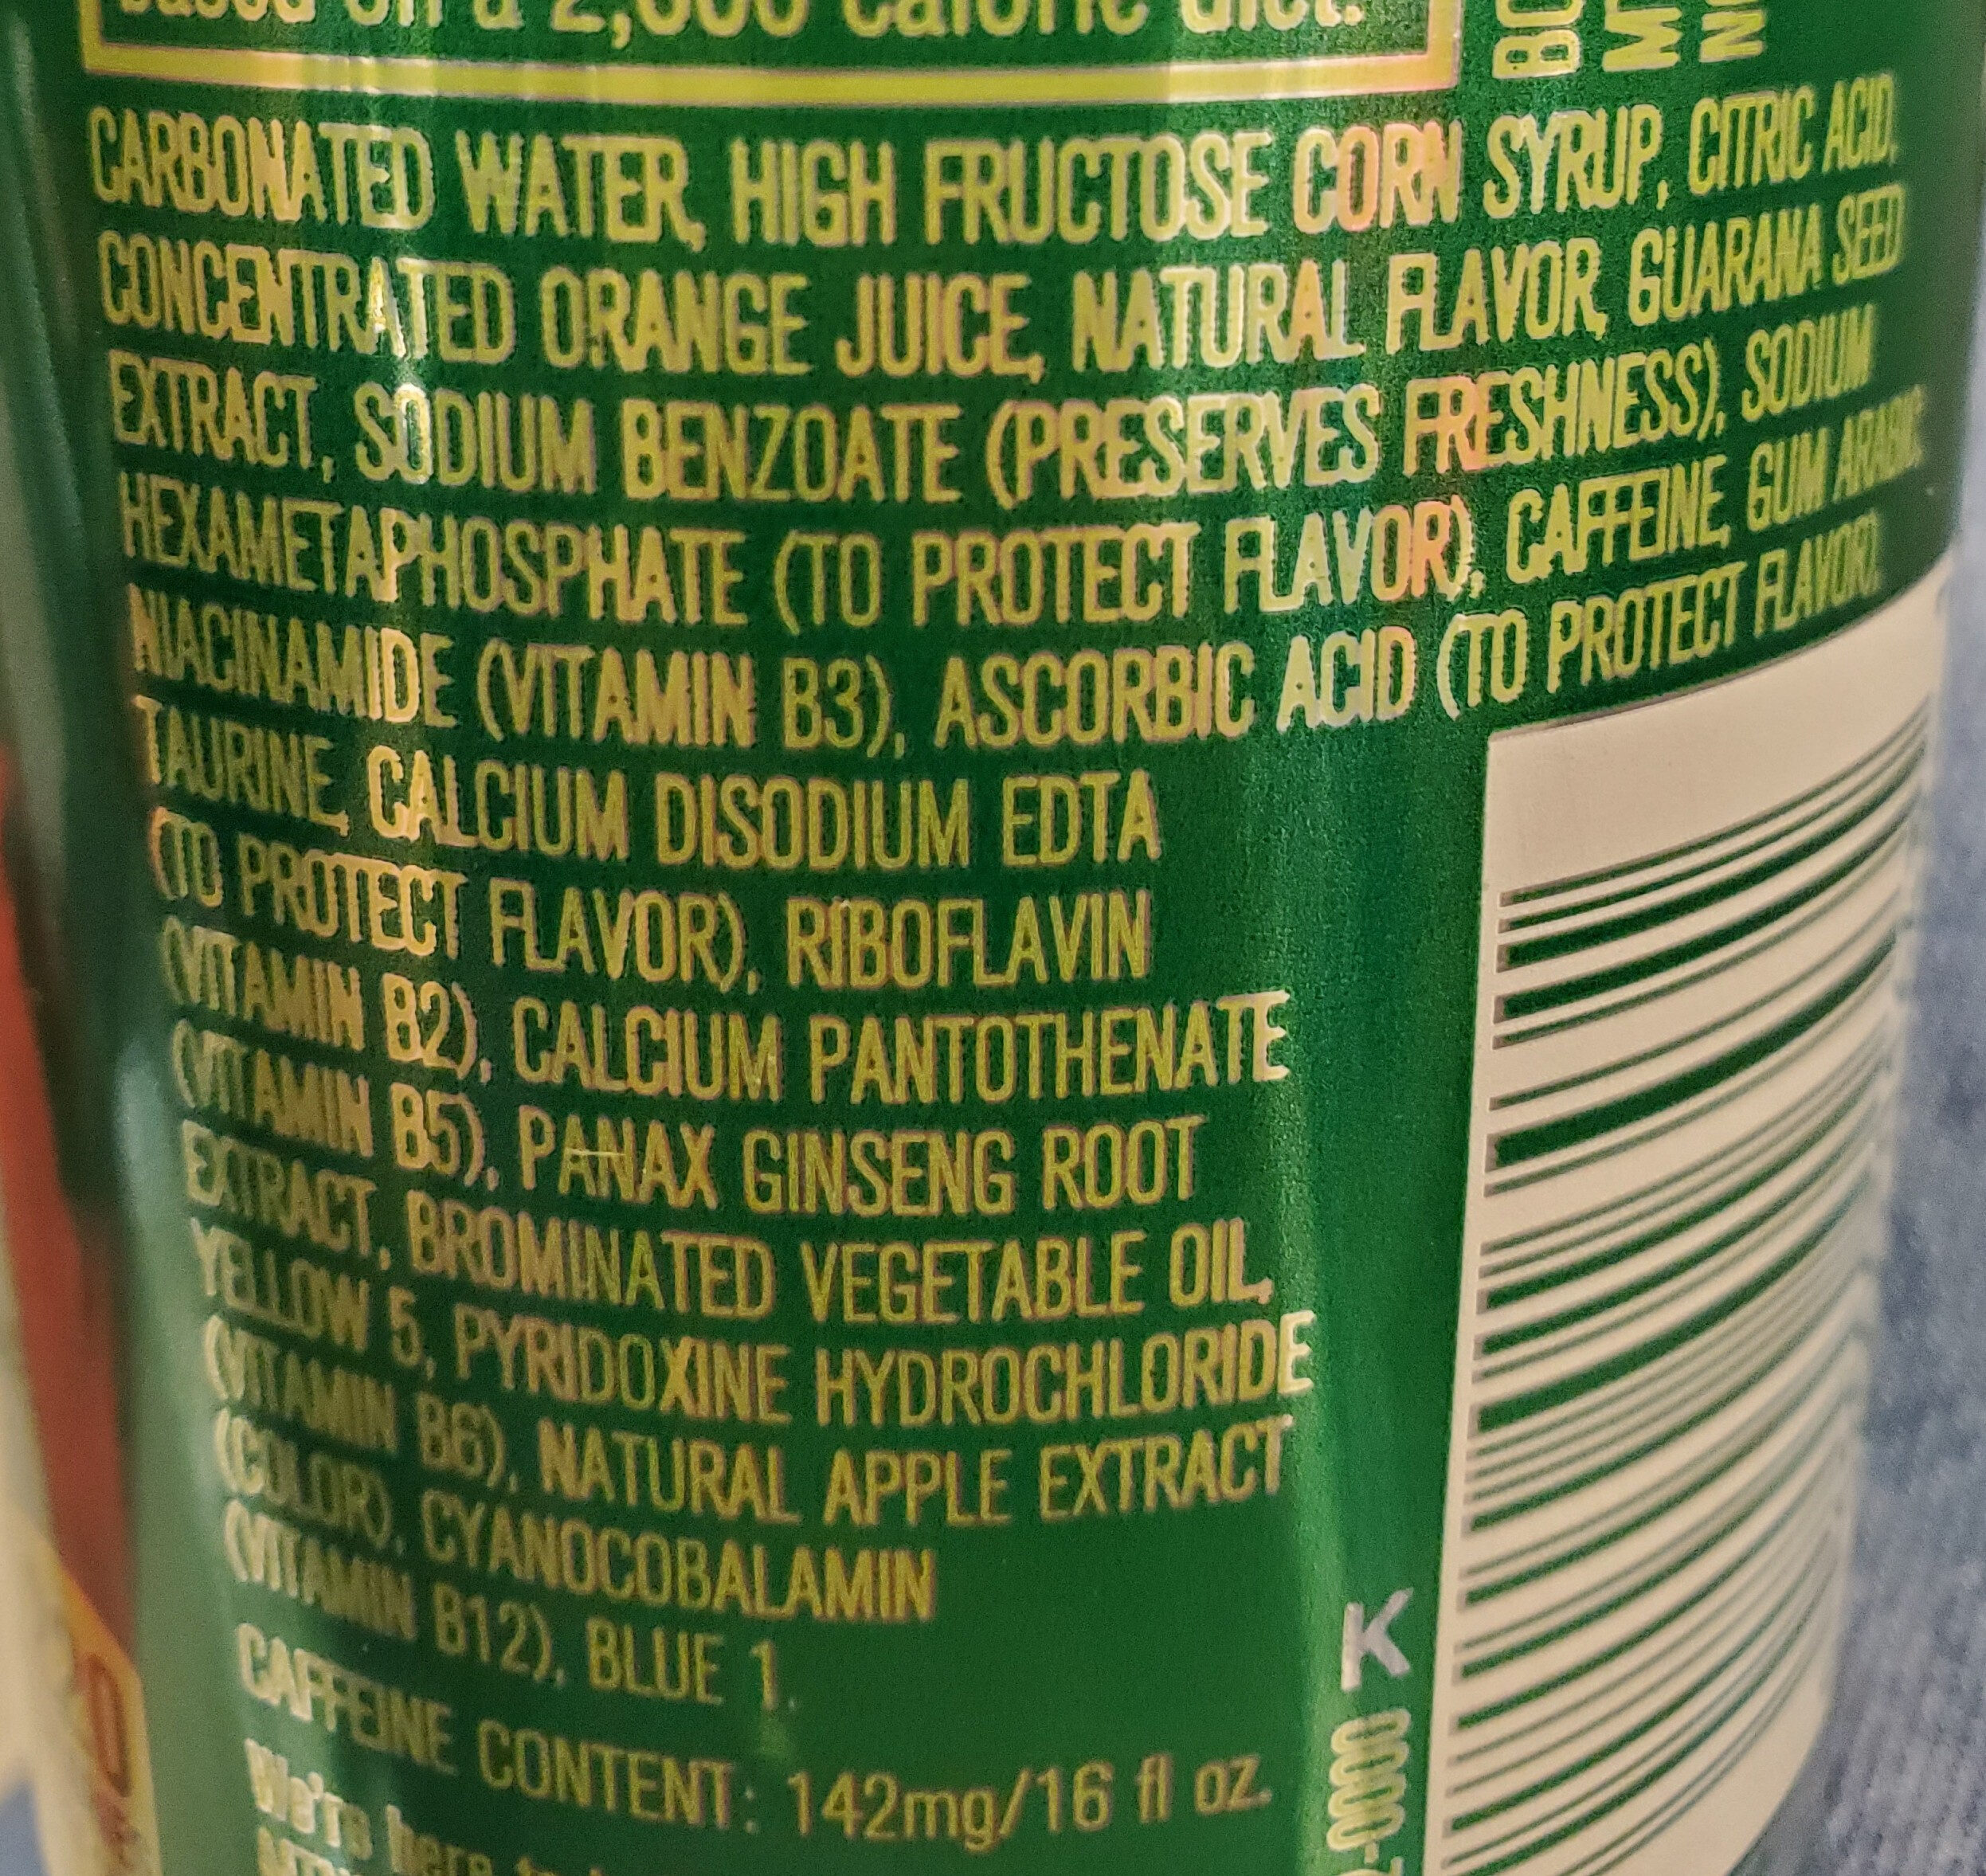 Amp energy boost original citrus energy drink - Ingredientes - en